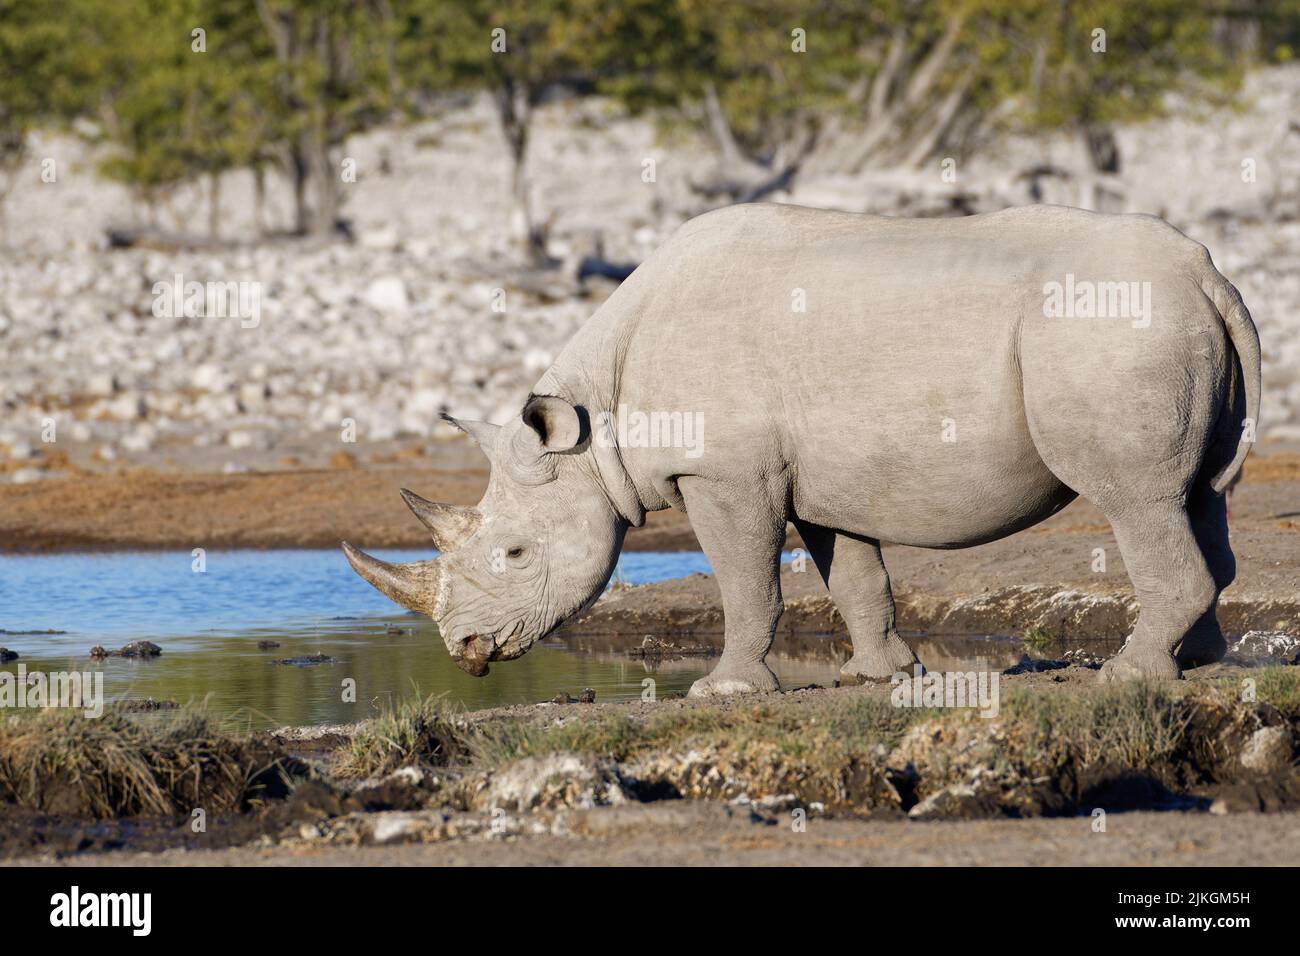 Black rhinoceros (Diceros bicornis), adult male, drinking at waterhole, Etosha National Park, Namibia, Africa Stock Photo